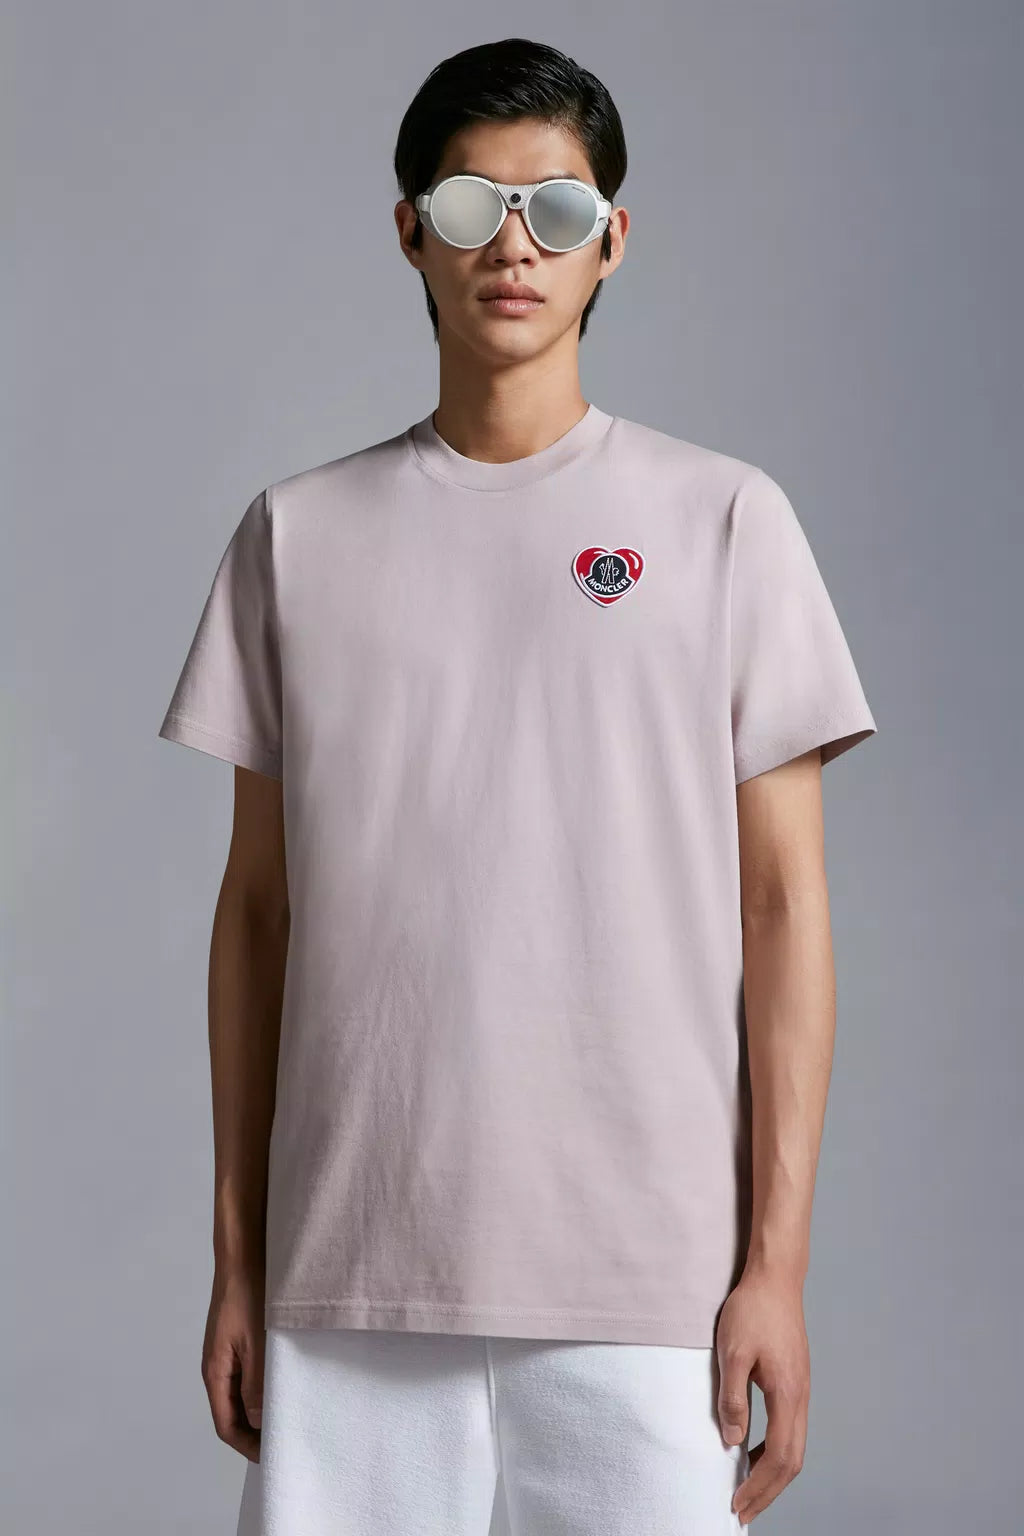 Moncler - tee- shirt rose